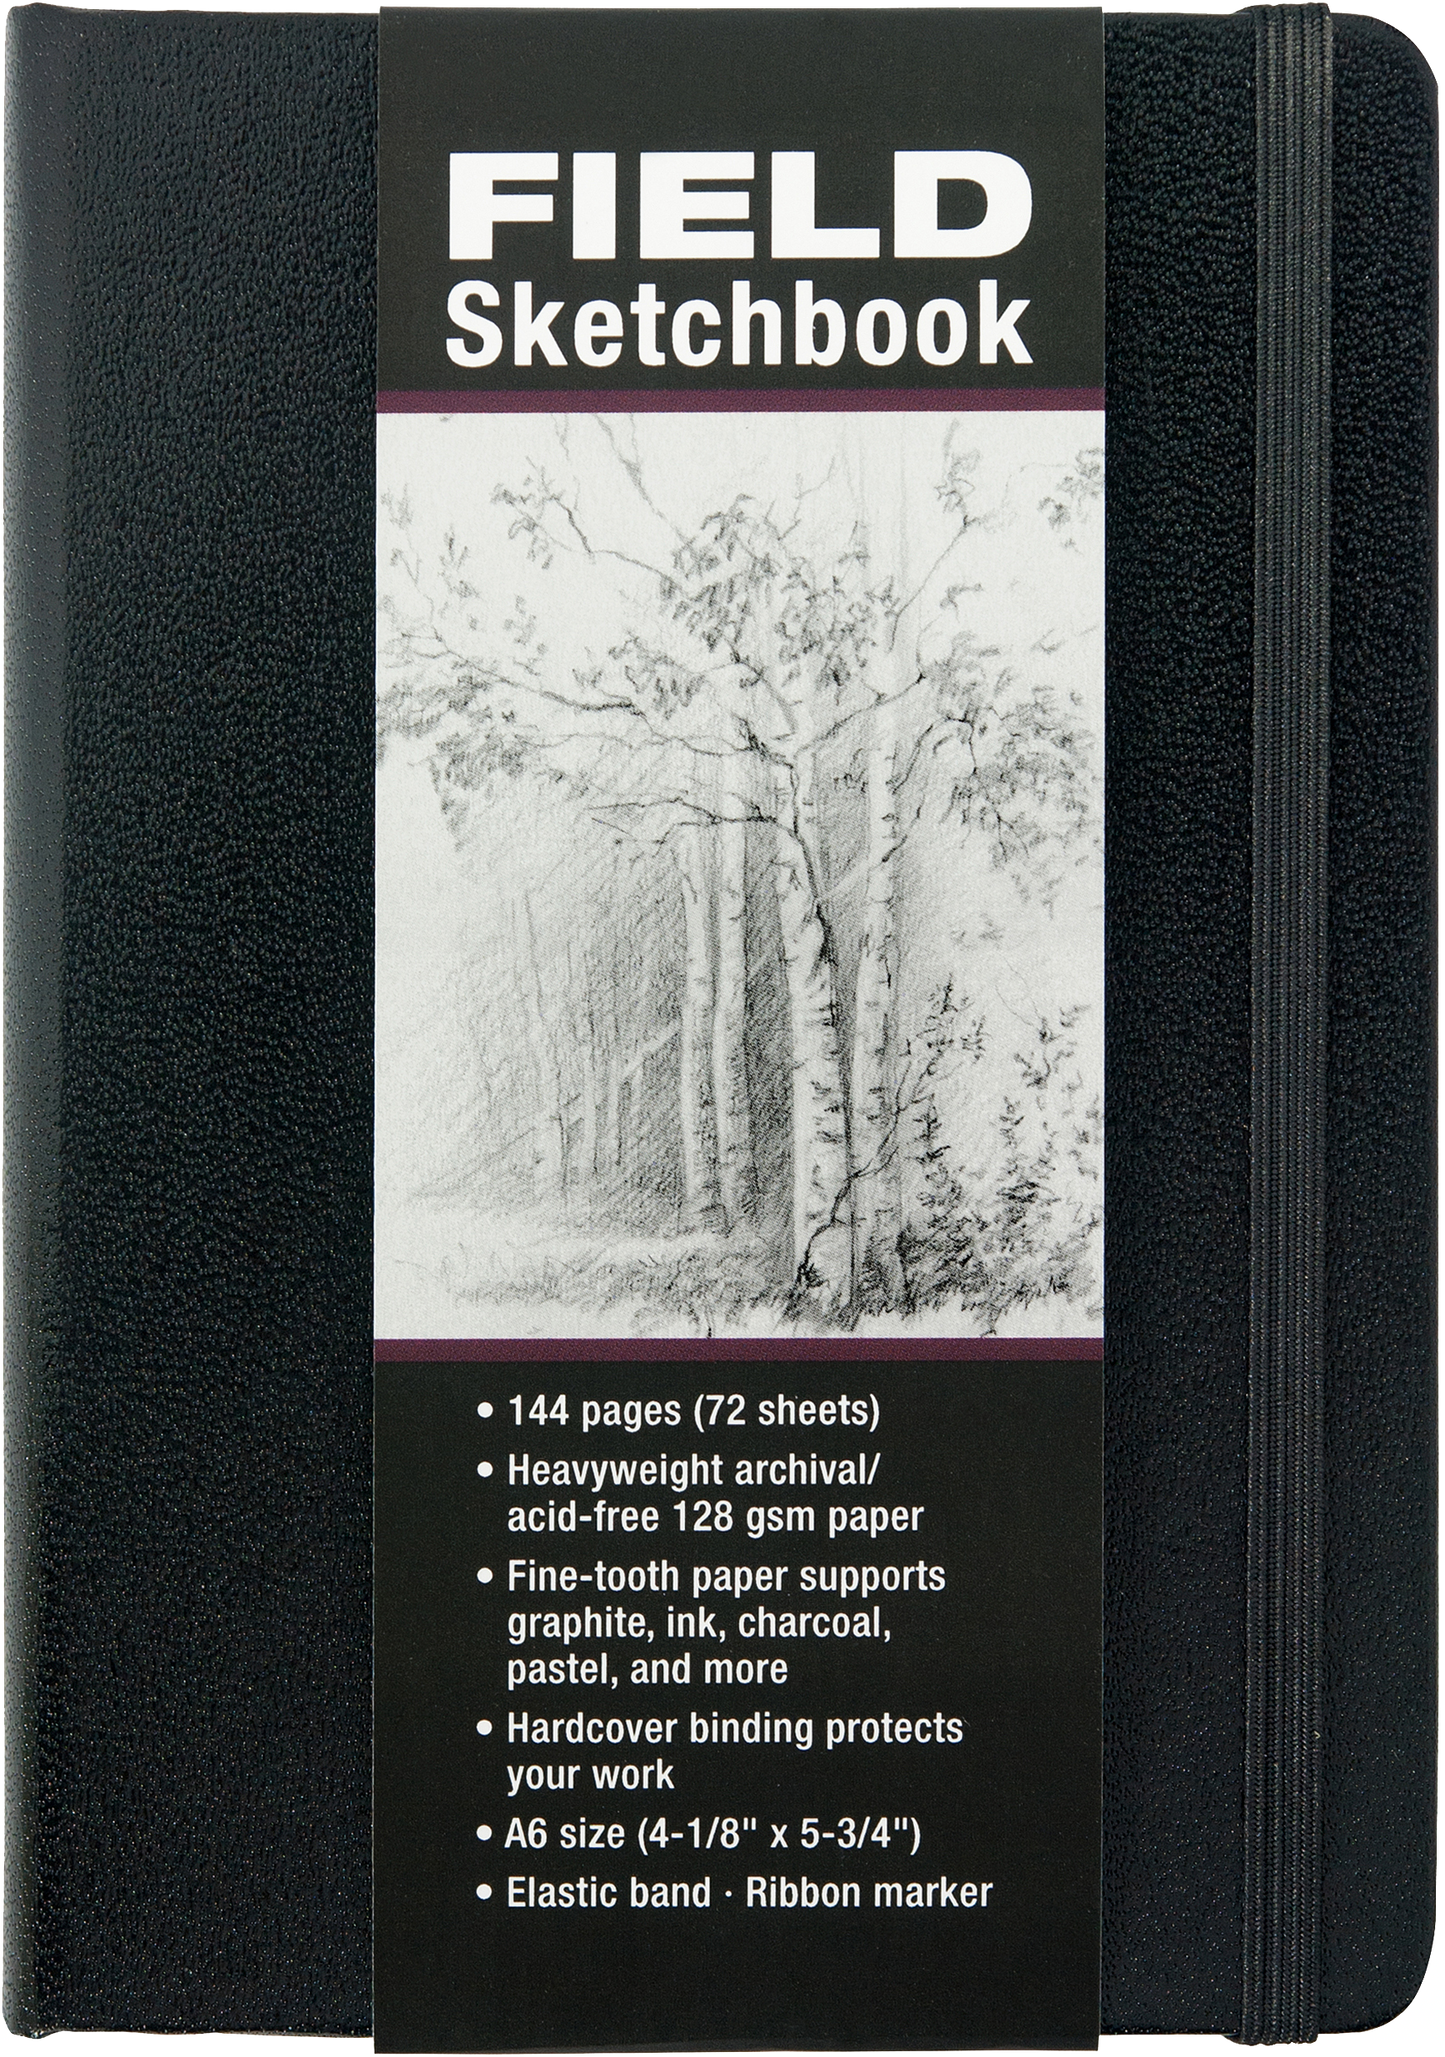 Studio Series A6 Field Sketchbook